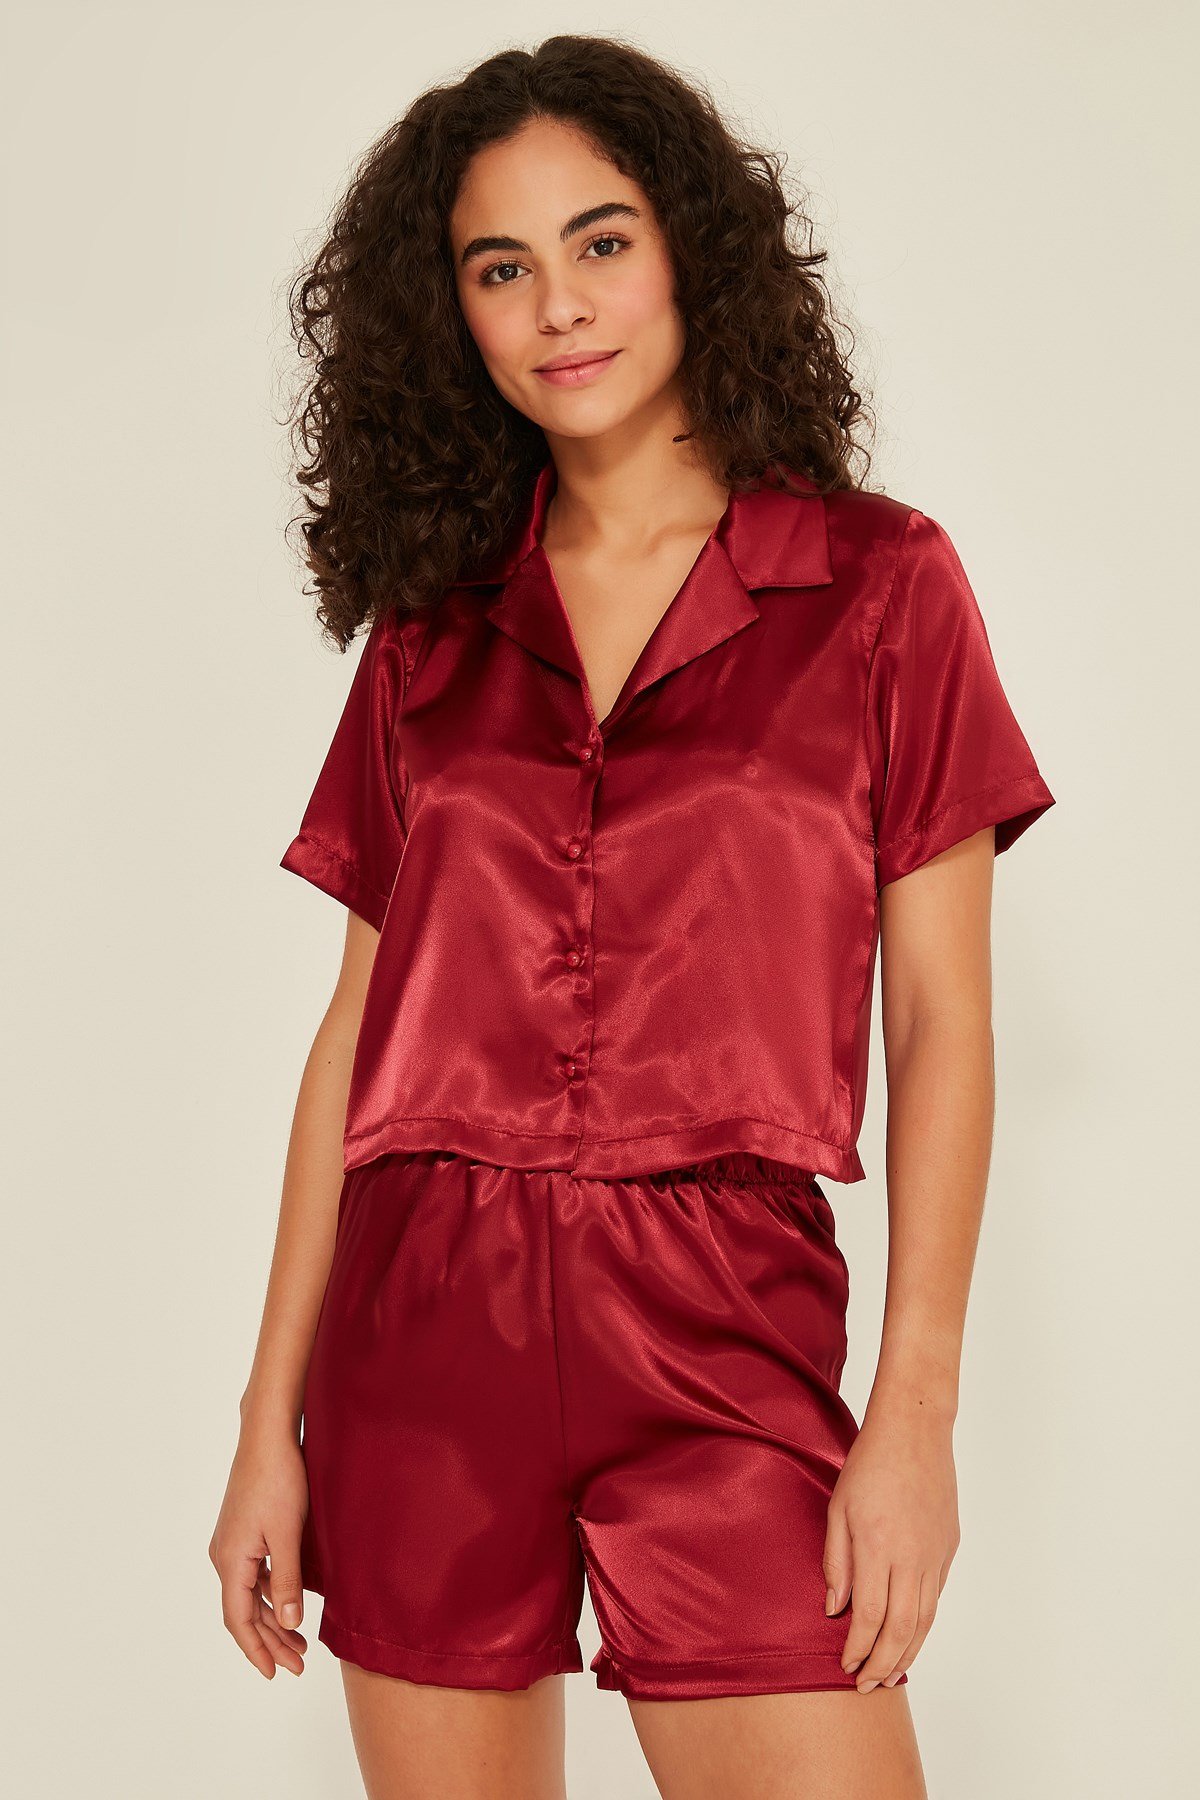 Women's Claret Red Satin Shorts Pajama Set